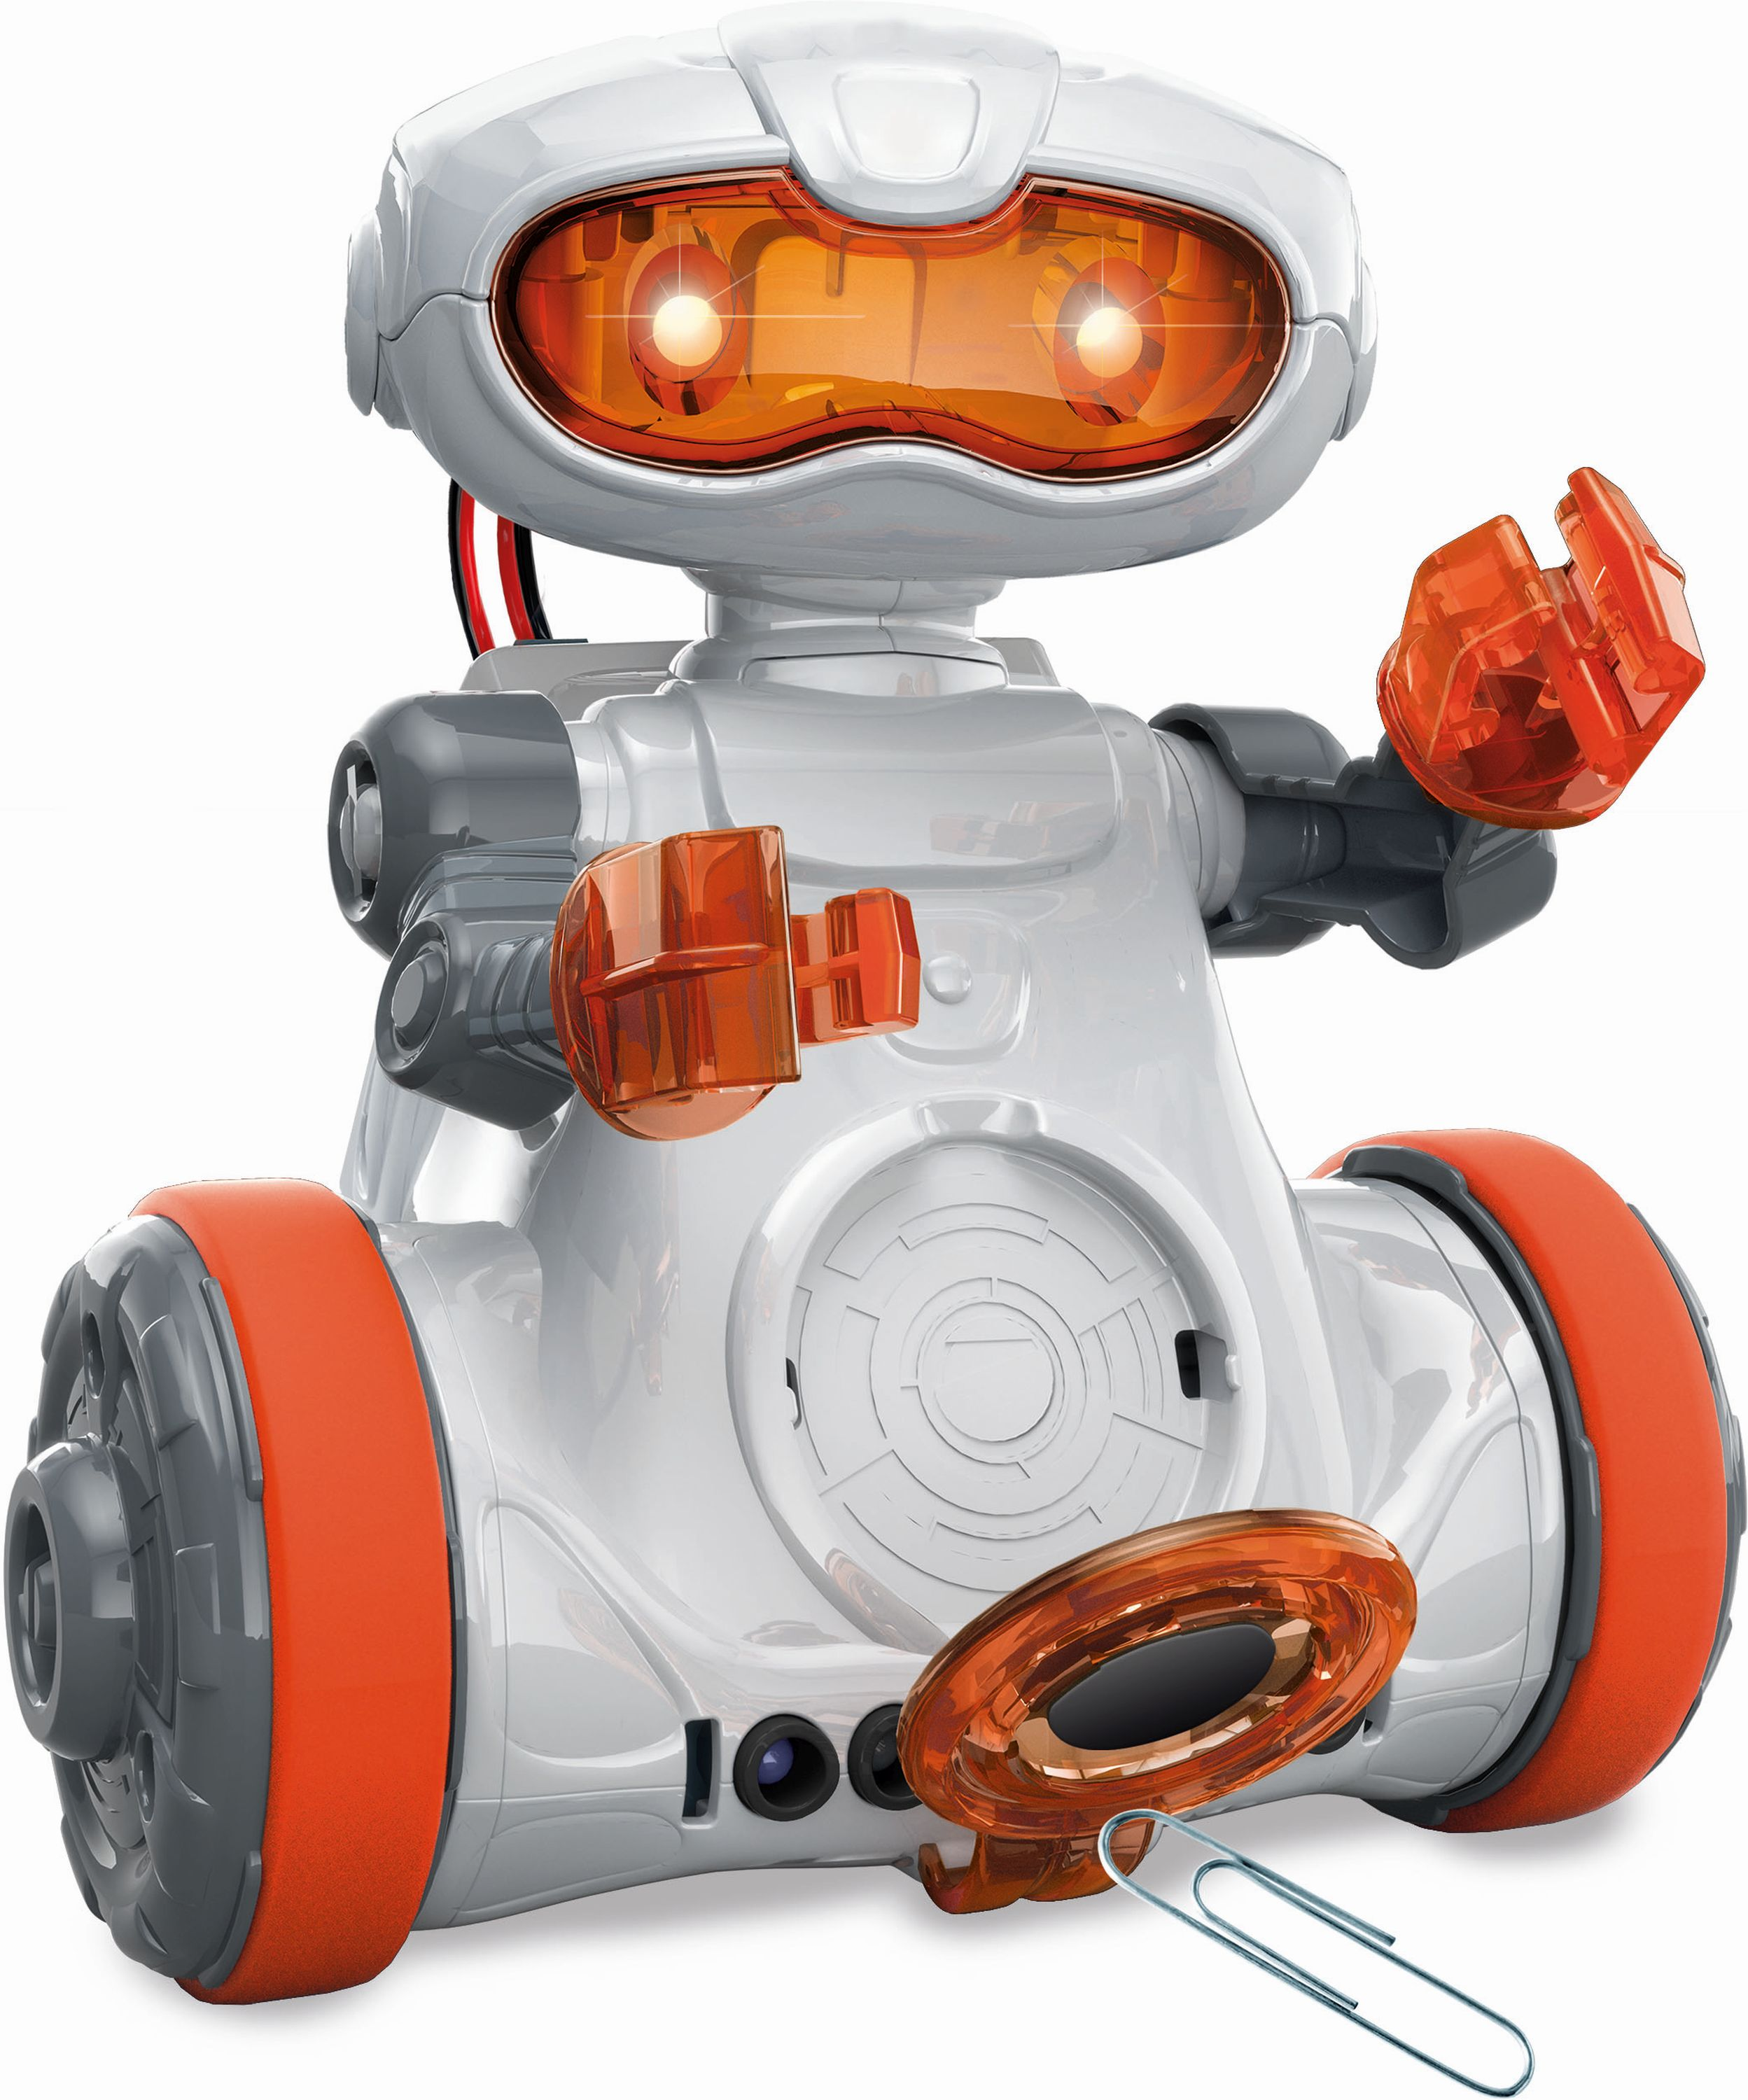 GALILEO Galileo - Mein Roboter Weiß/Orange Lernroboter, MC 5